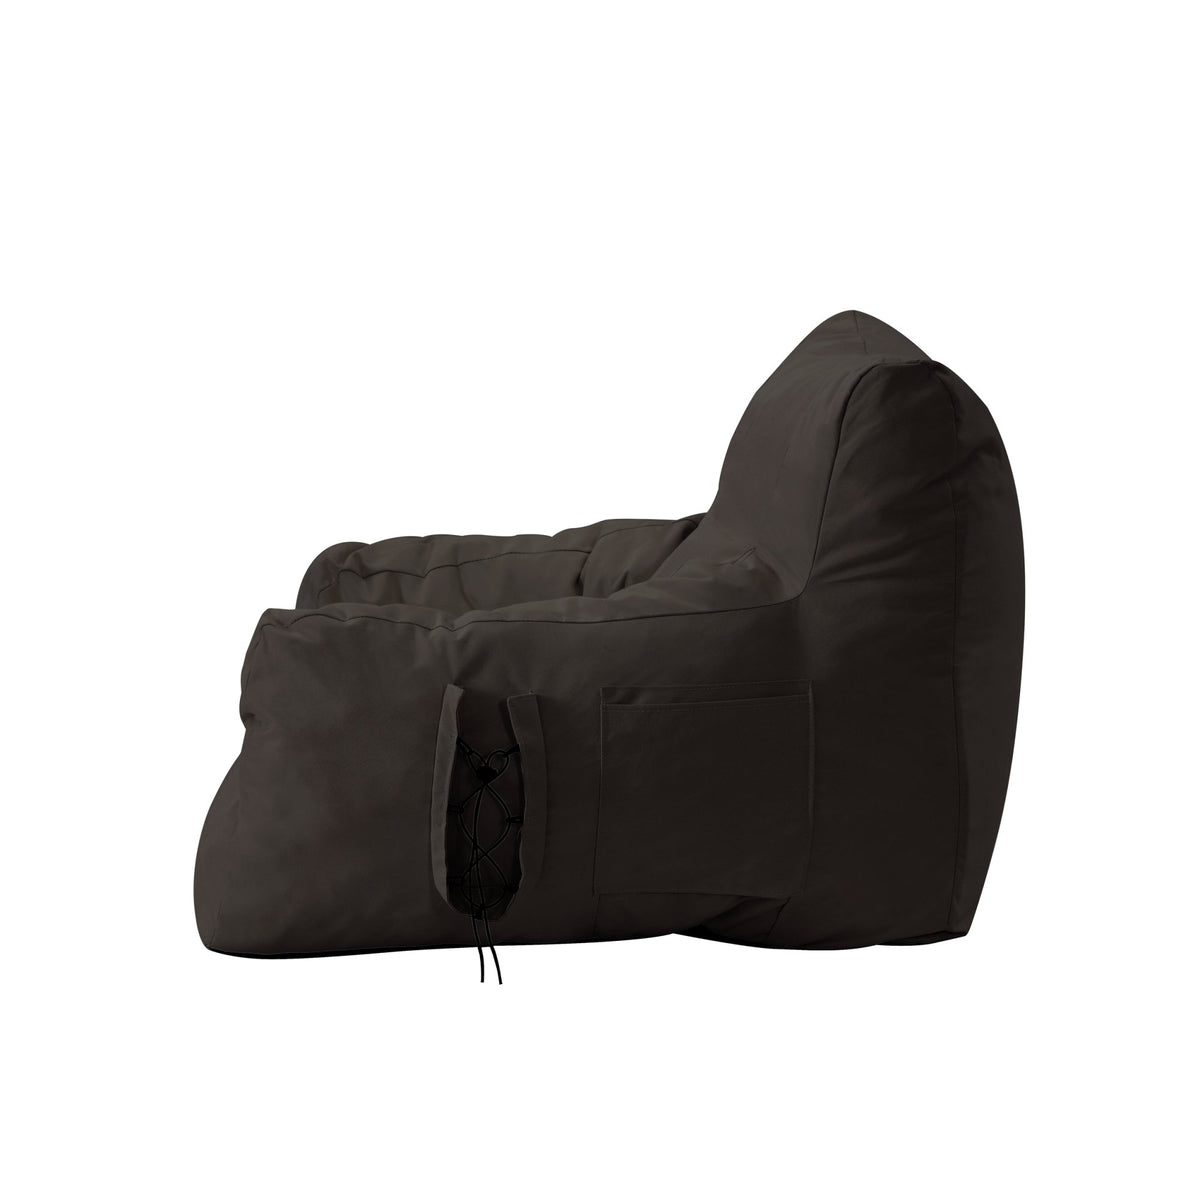 Bean Bag Chair/ Lounge Chair/ Memory Foam Chair/ Floor Arm Chair - Comfy Bean Bag Memory Foam Floor Chair